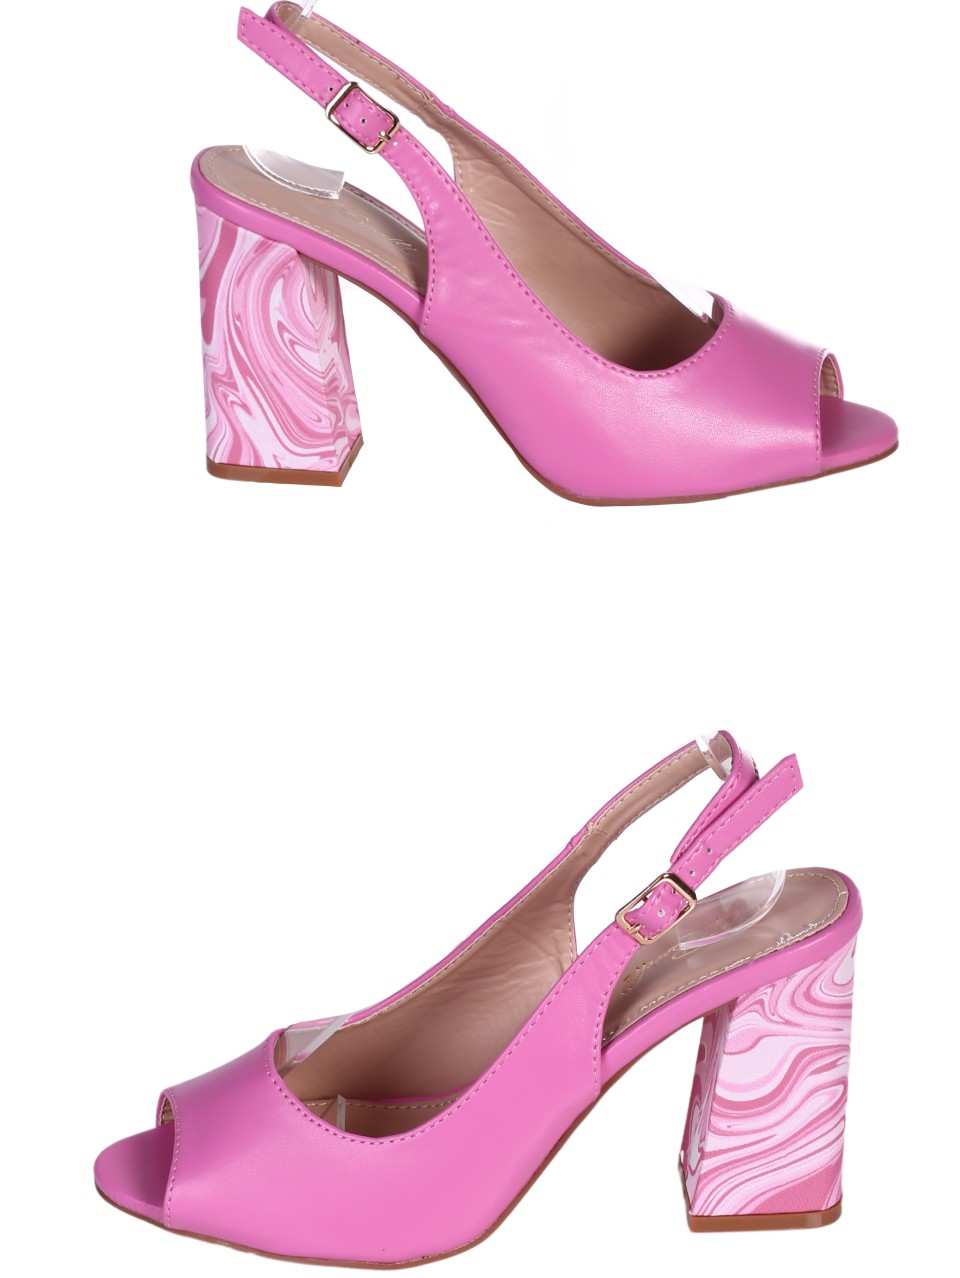 Елегантни дамски сандали на ток в цвят фуксия 4M-24154 fuchsia